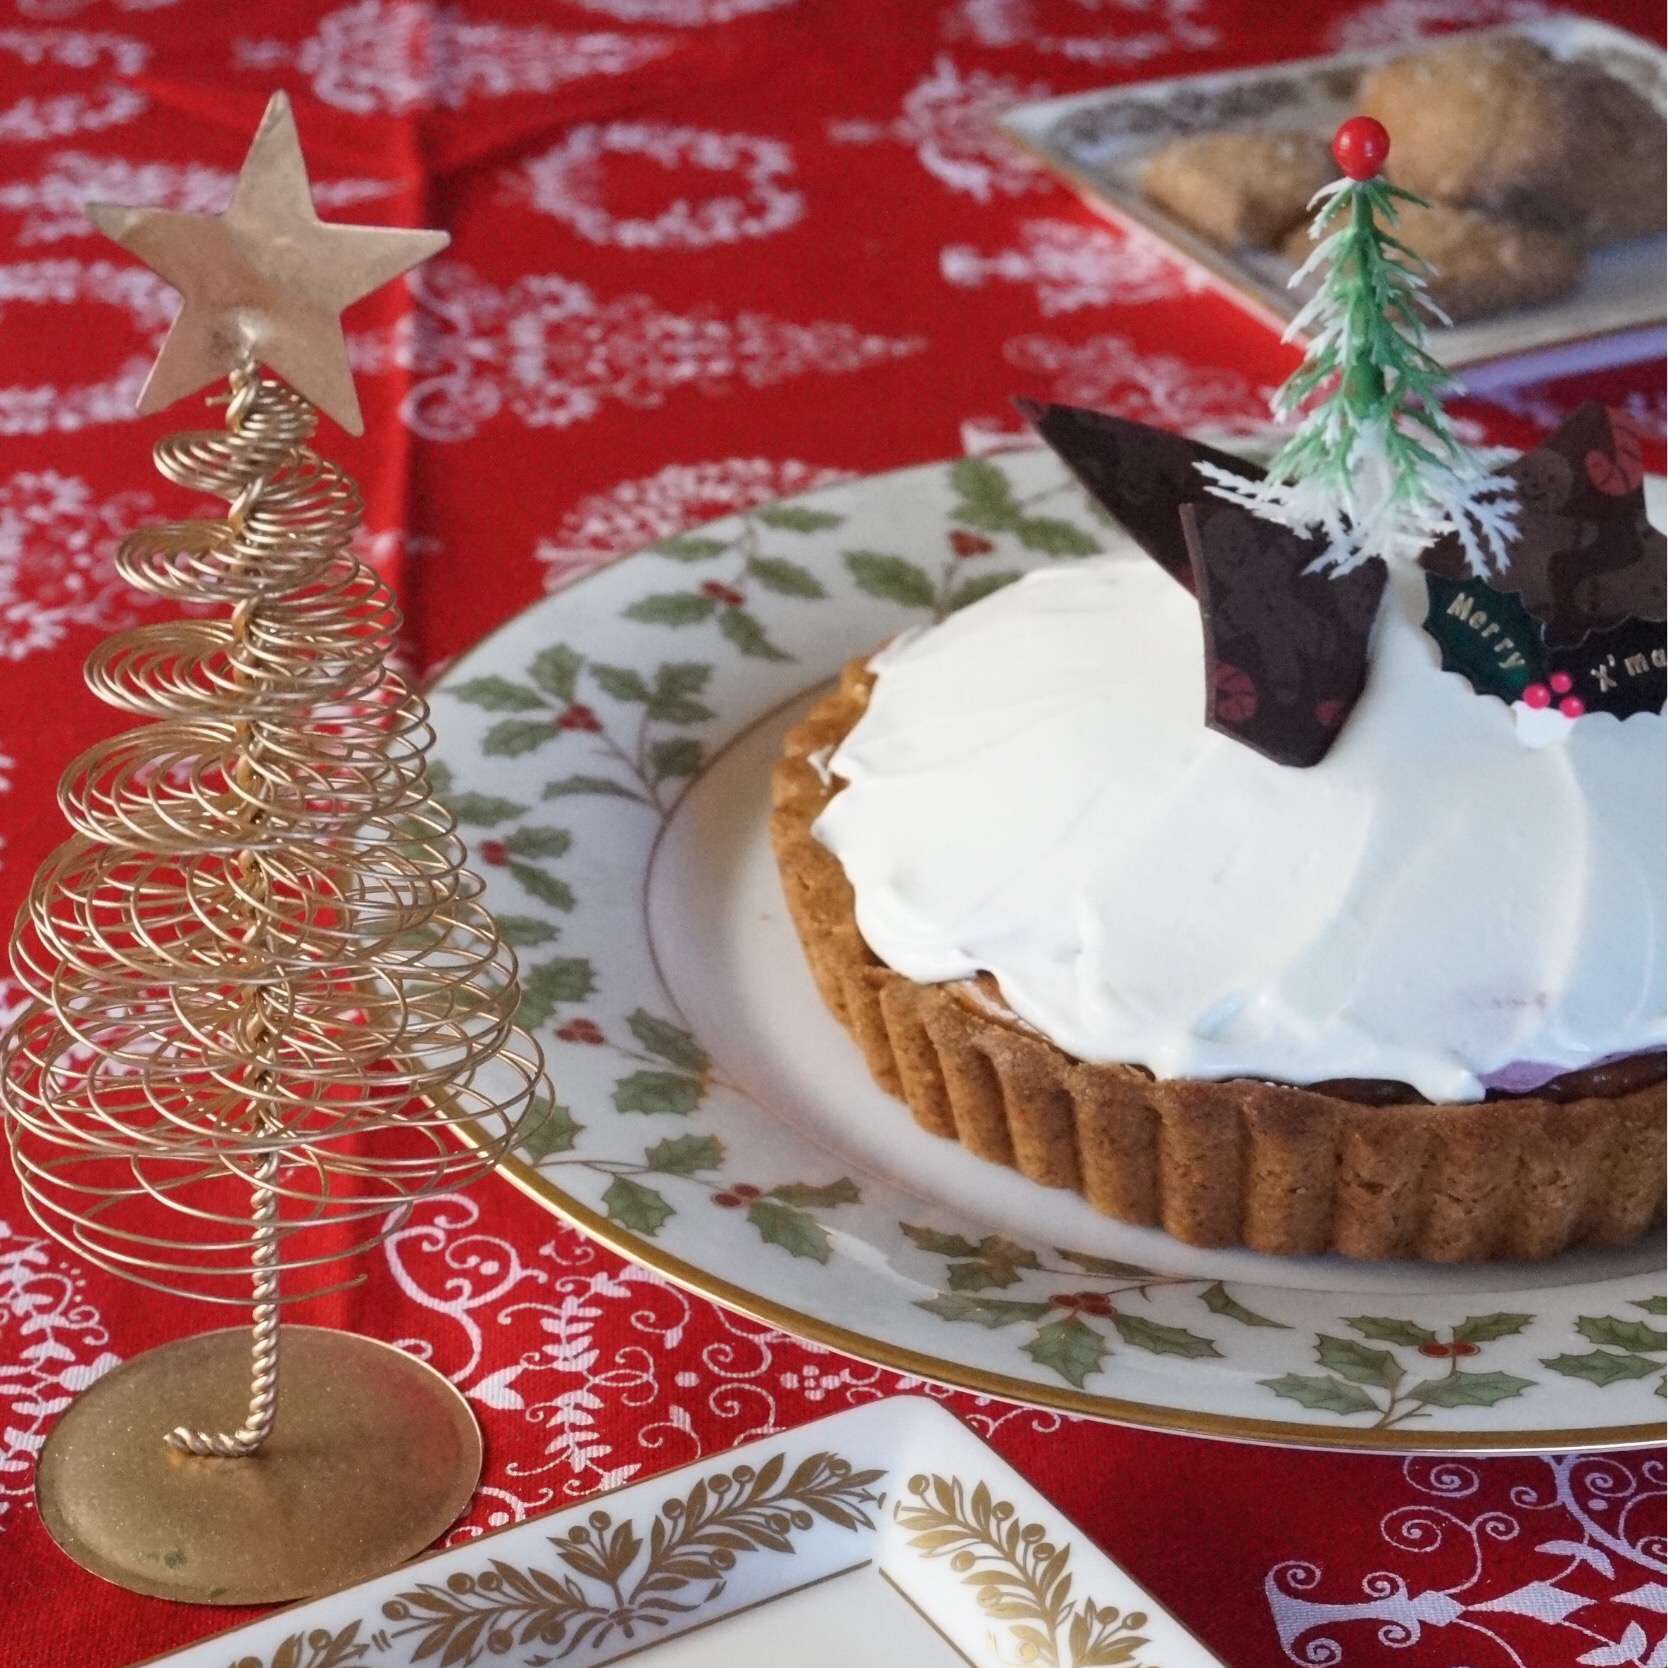 カシスのチーズタルト #手作りケーキ #クリスマスパーティー#クリスマスケーキ#カシス #チーズケーキ  #マスカルポーネ